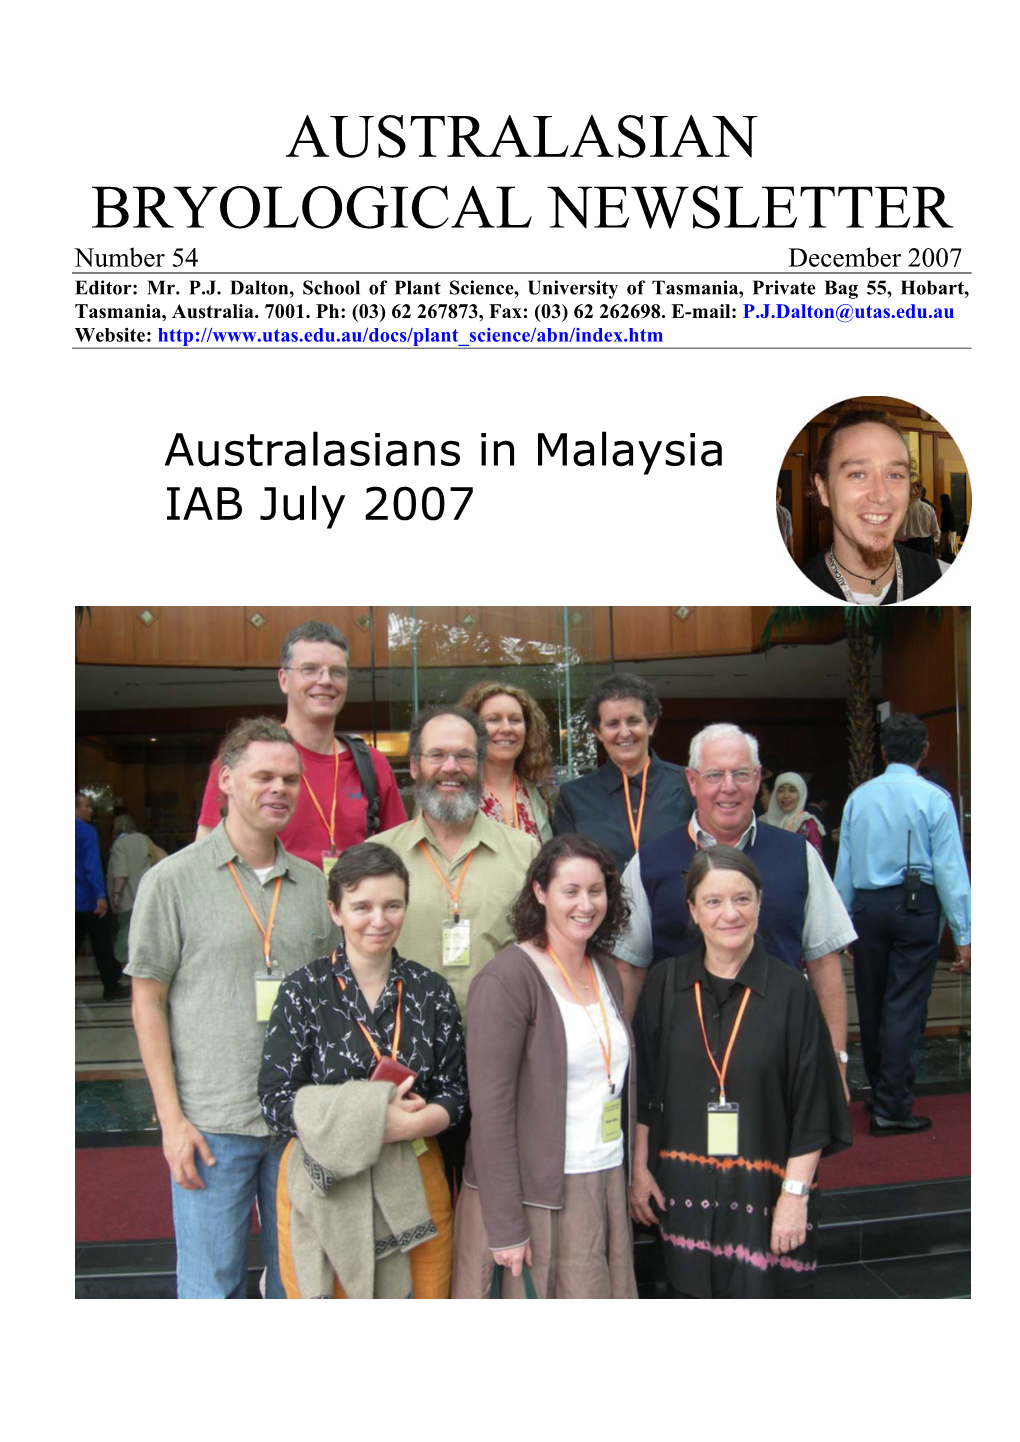 AUSTRALASIAN BRYOLOGICAL NEWSLETTER Number 54 December 2007 Editor: Mr